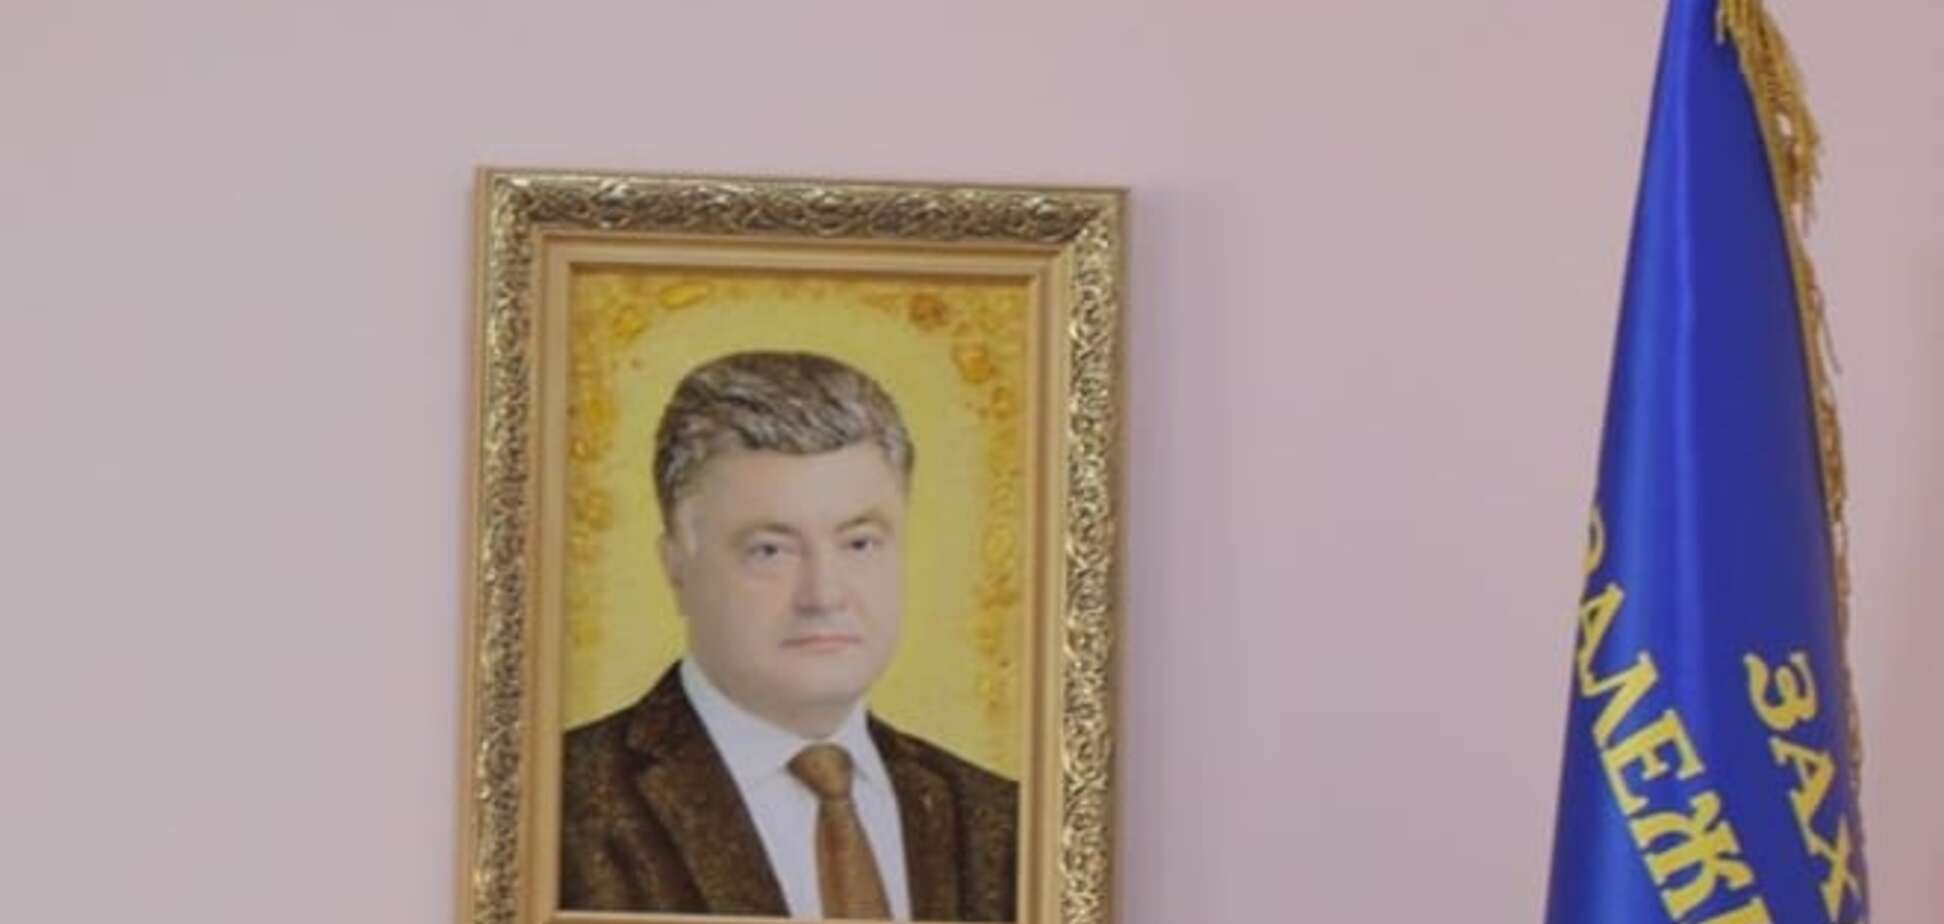 Серед чиновників з'явилася мода на портрет Порошенка з бурштину: фотофакт